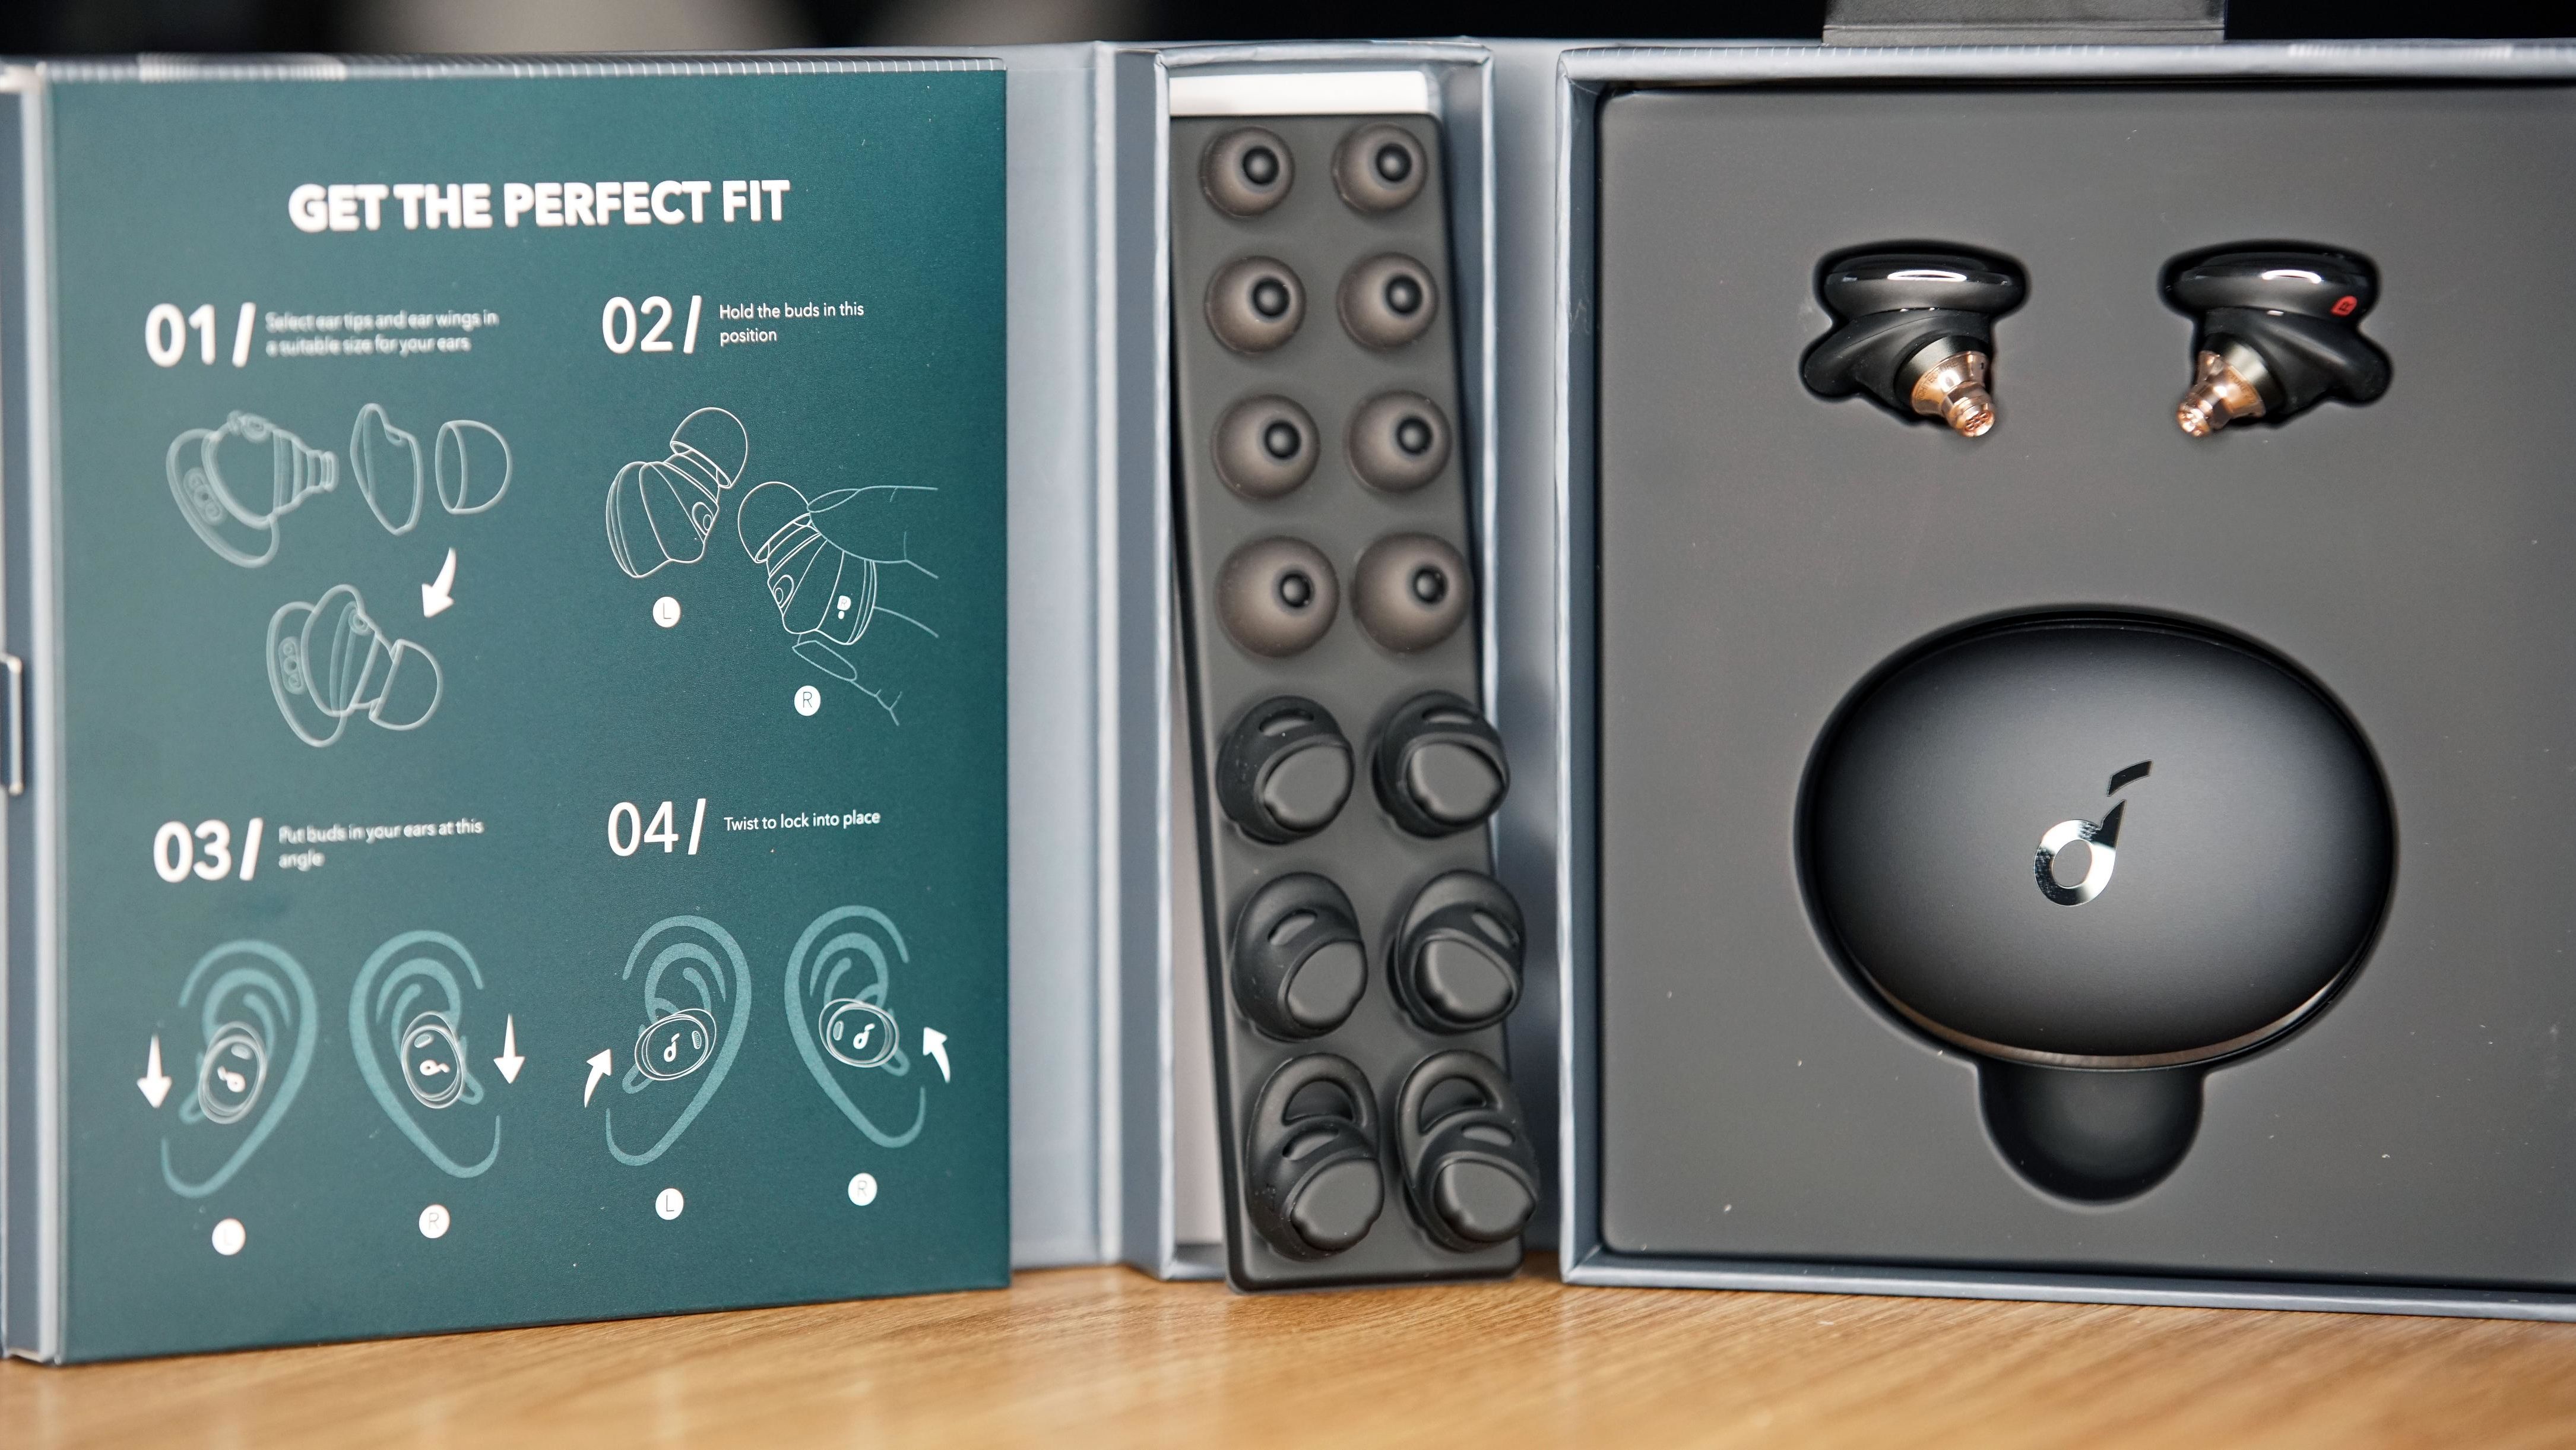 Soundcore Liberty 3 Pro Wireless In-Ear Headset - Fog Gray for sale online